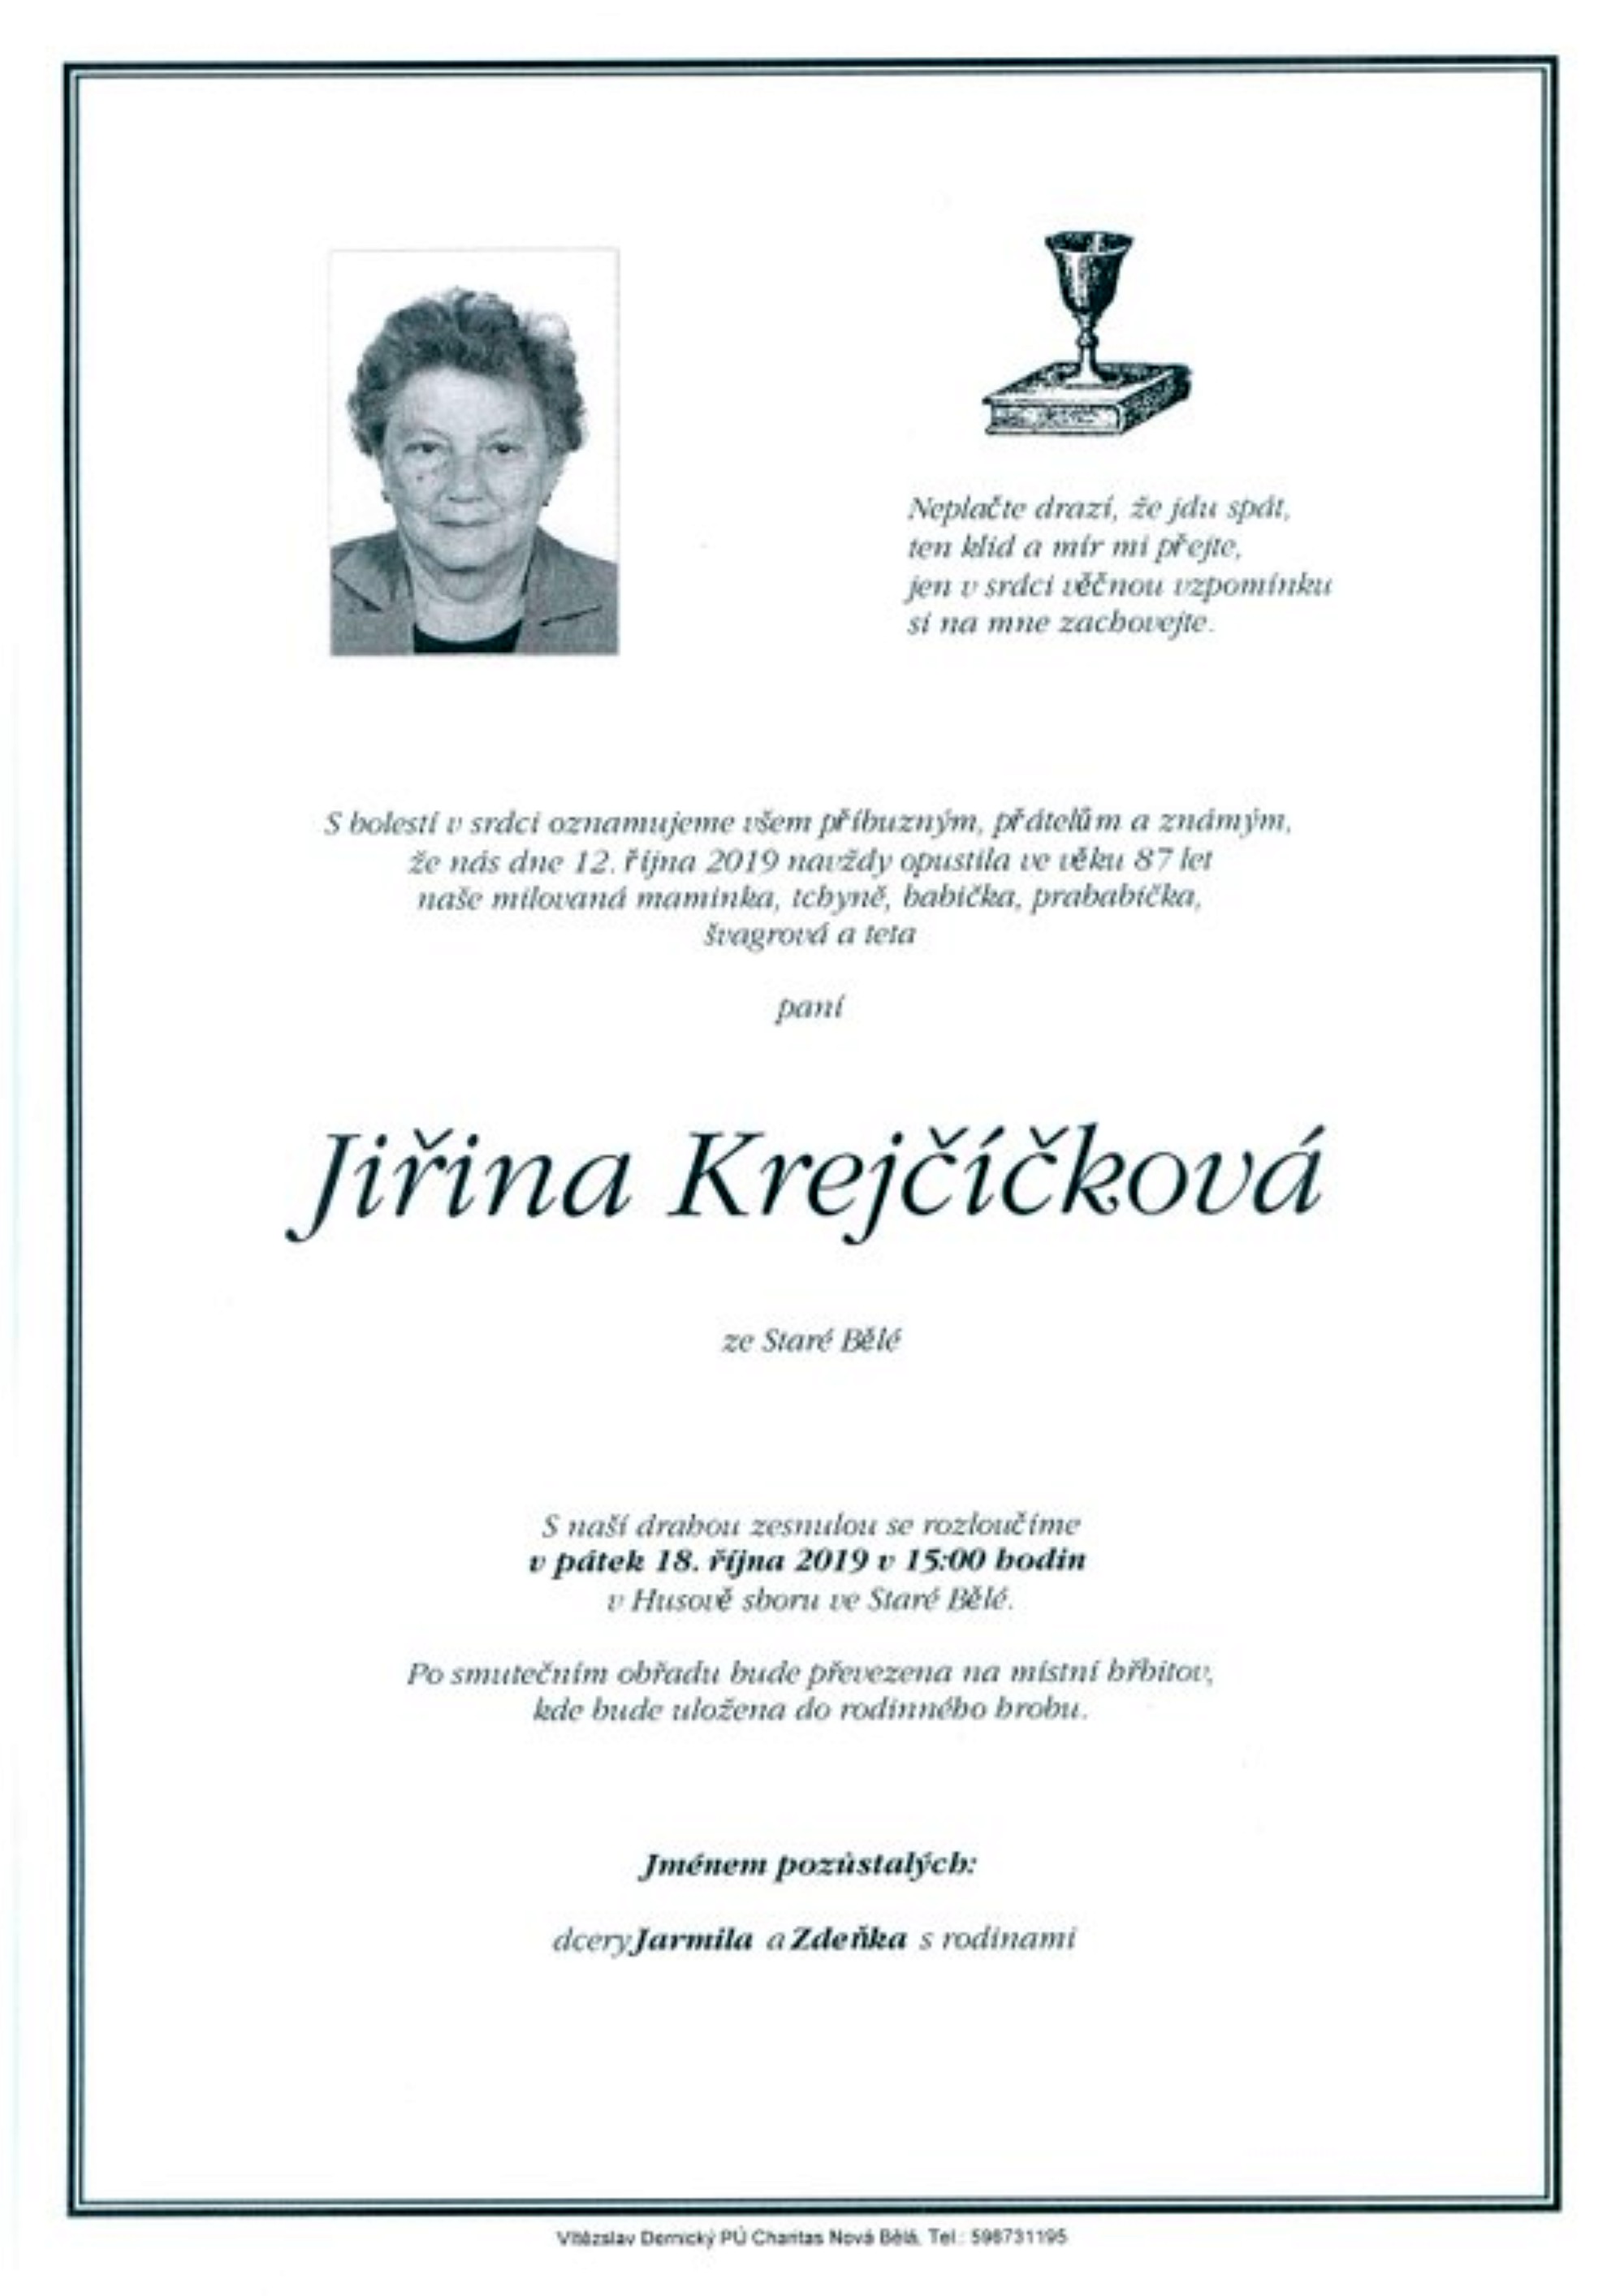 Jiřina Krejčíčková